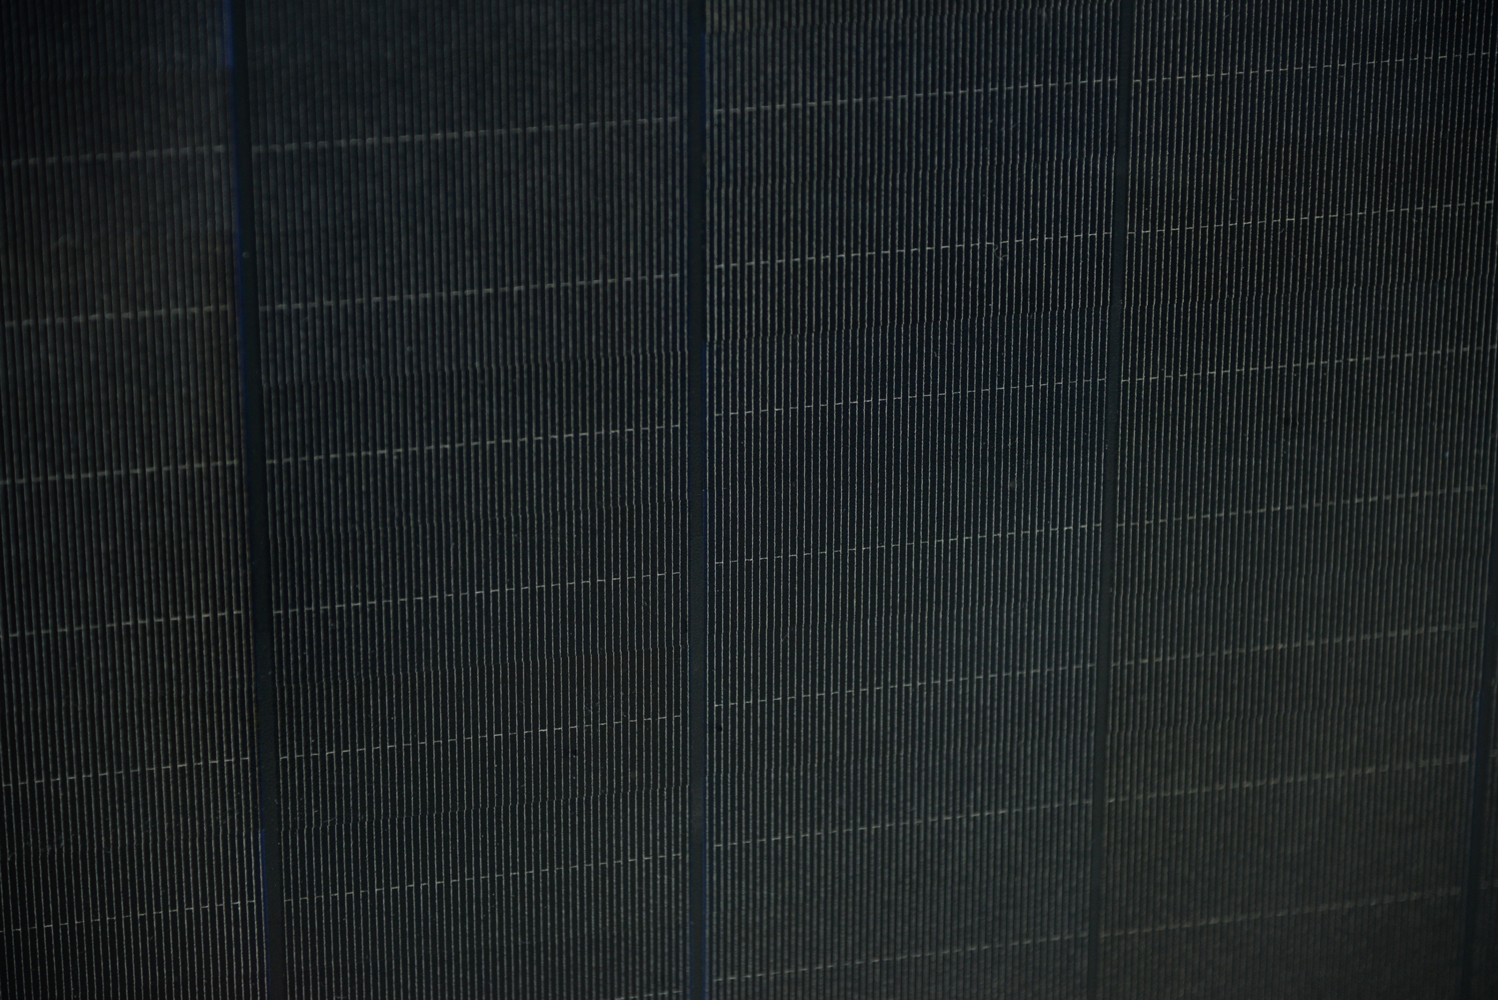 SGD系列单晶50W太阳能电池板